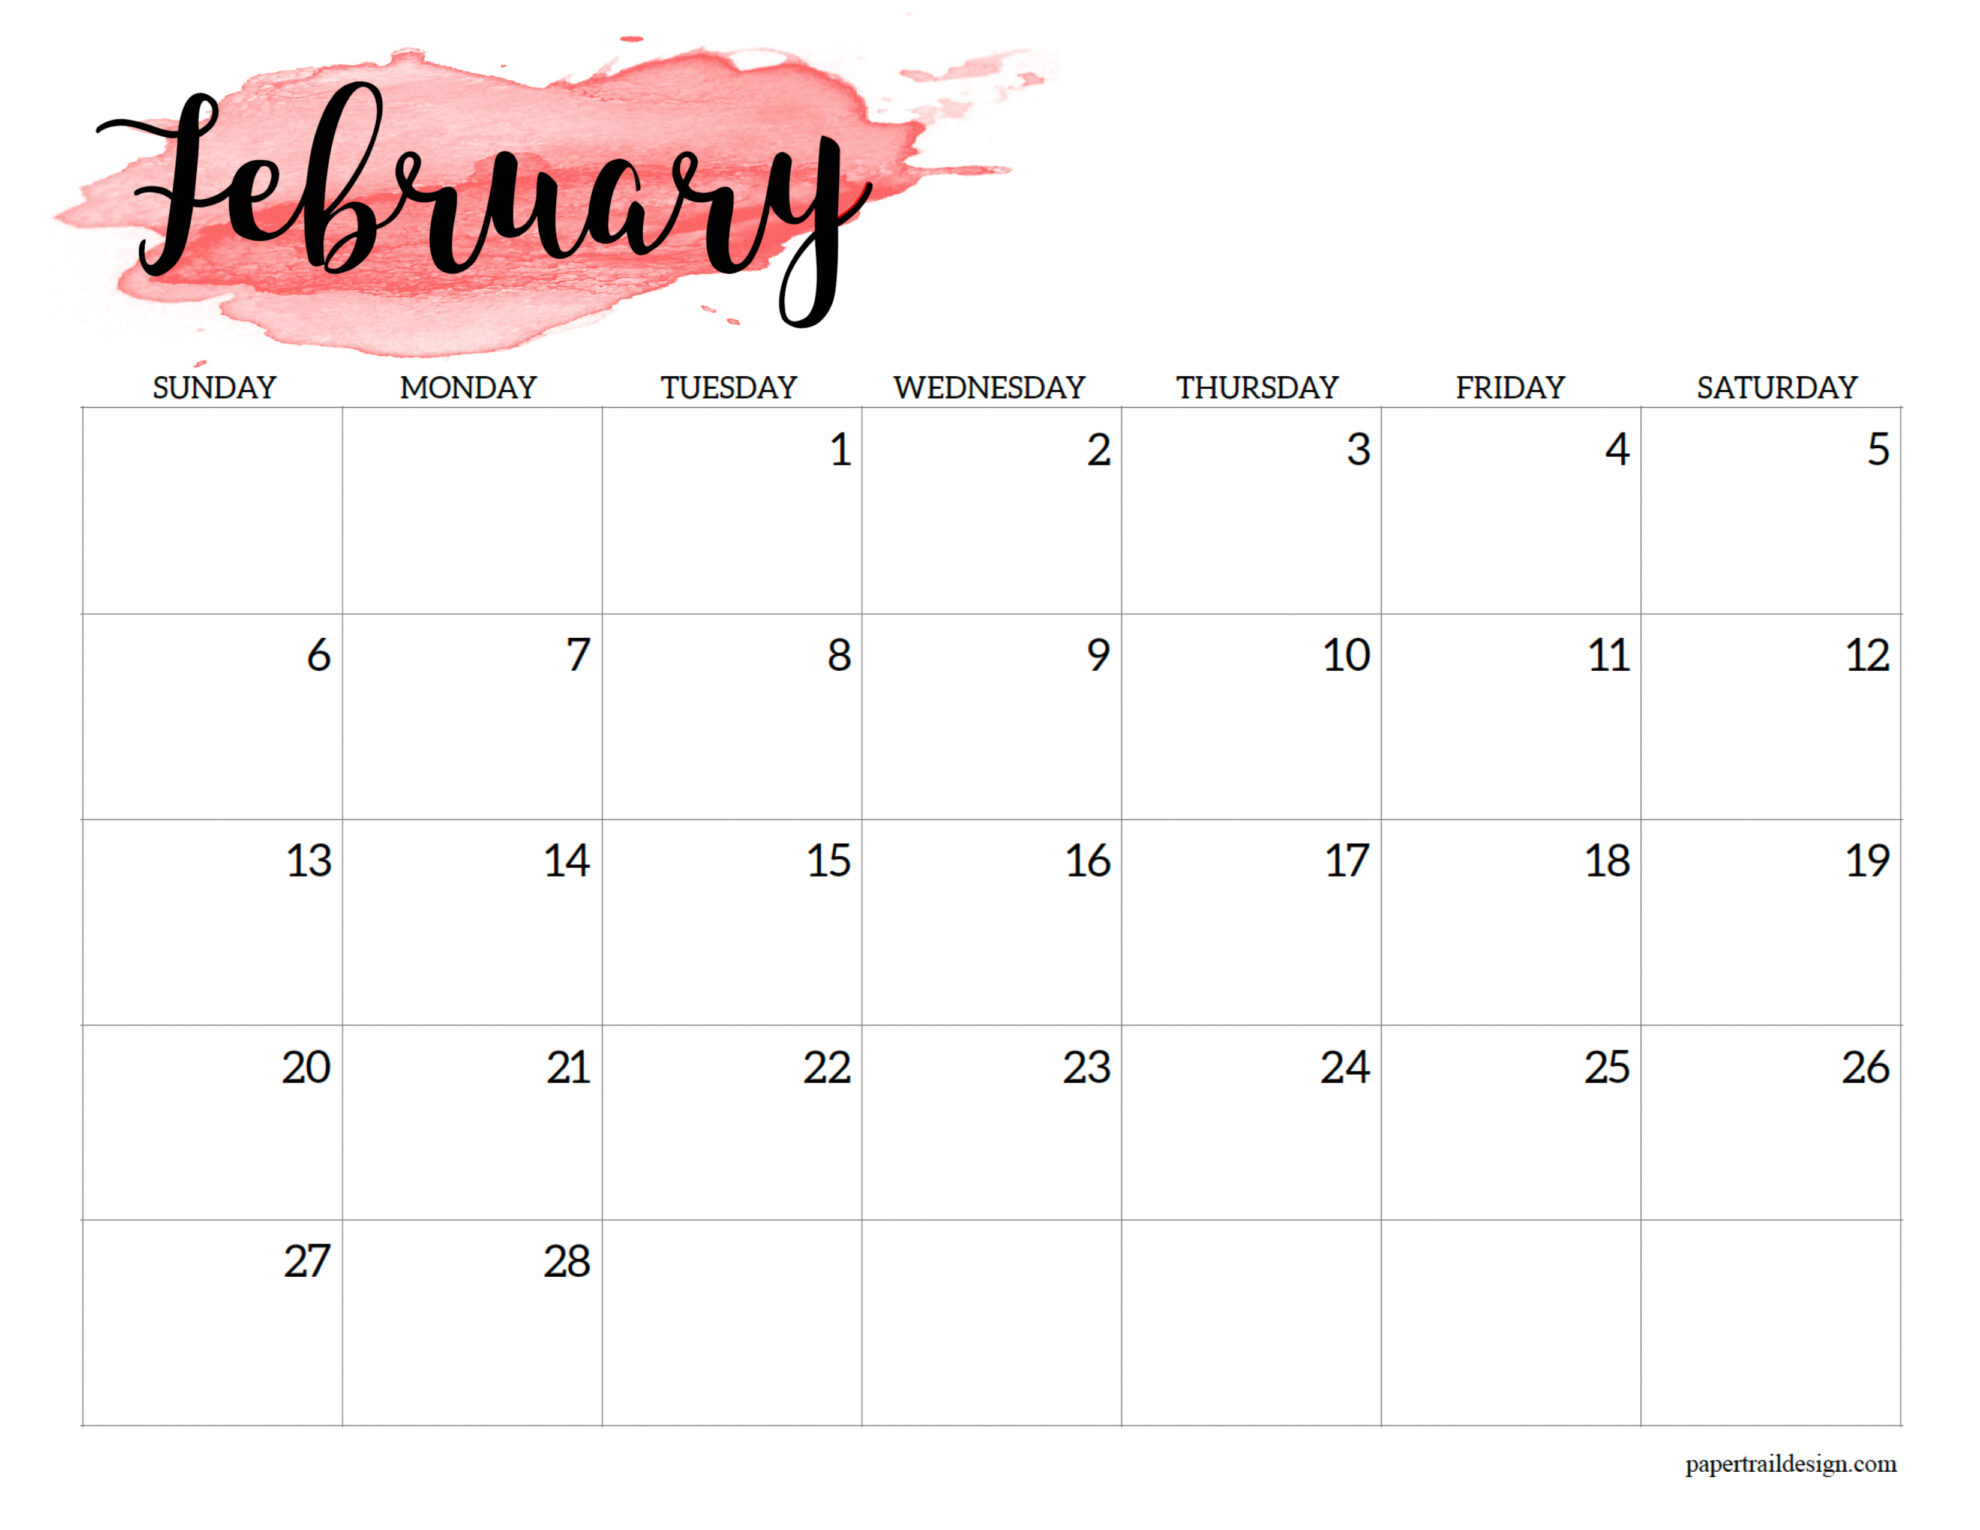 Feb 2022 Calendar Printable 2022 Calendar Printable - Watercolor - Paper Trail Design